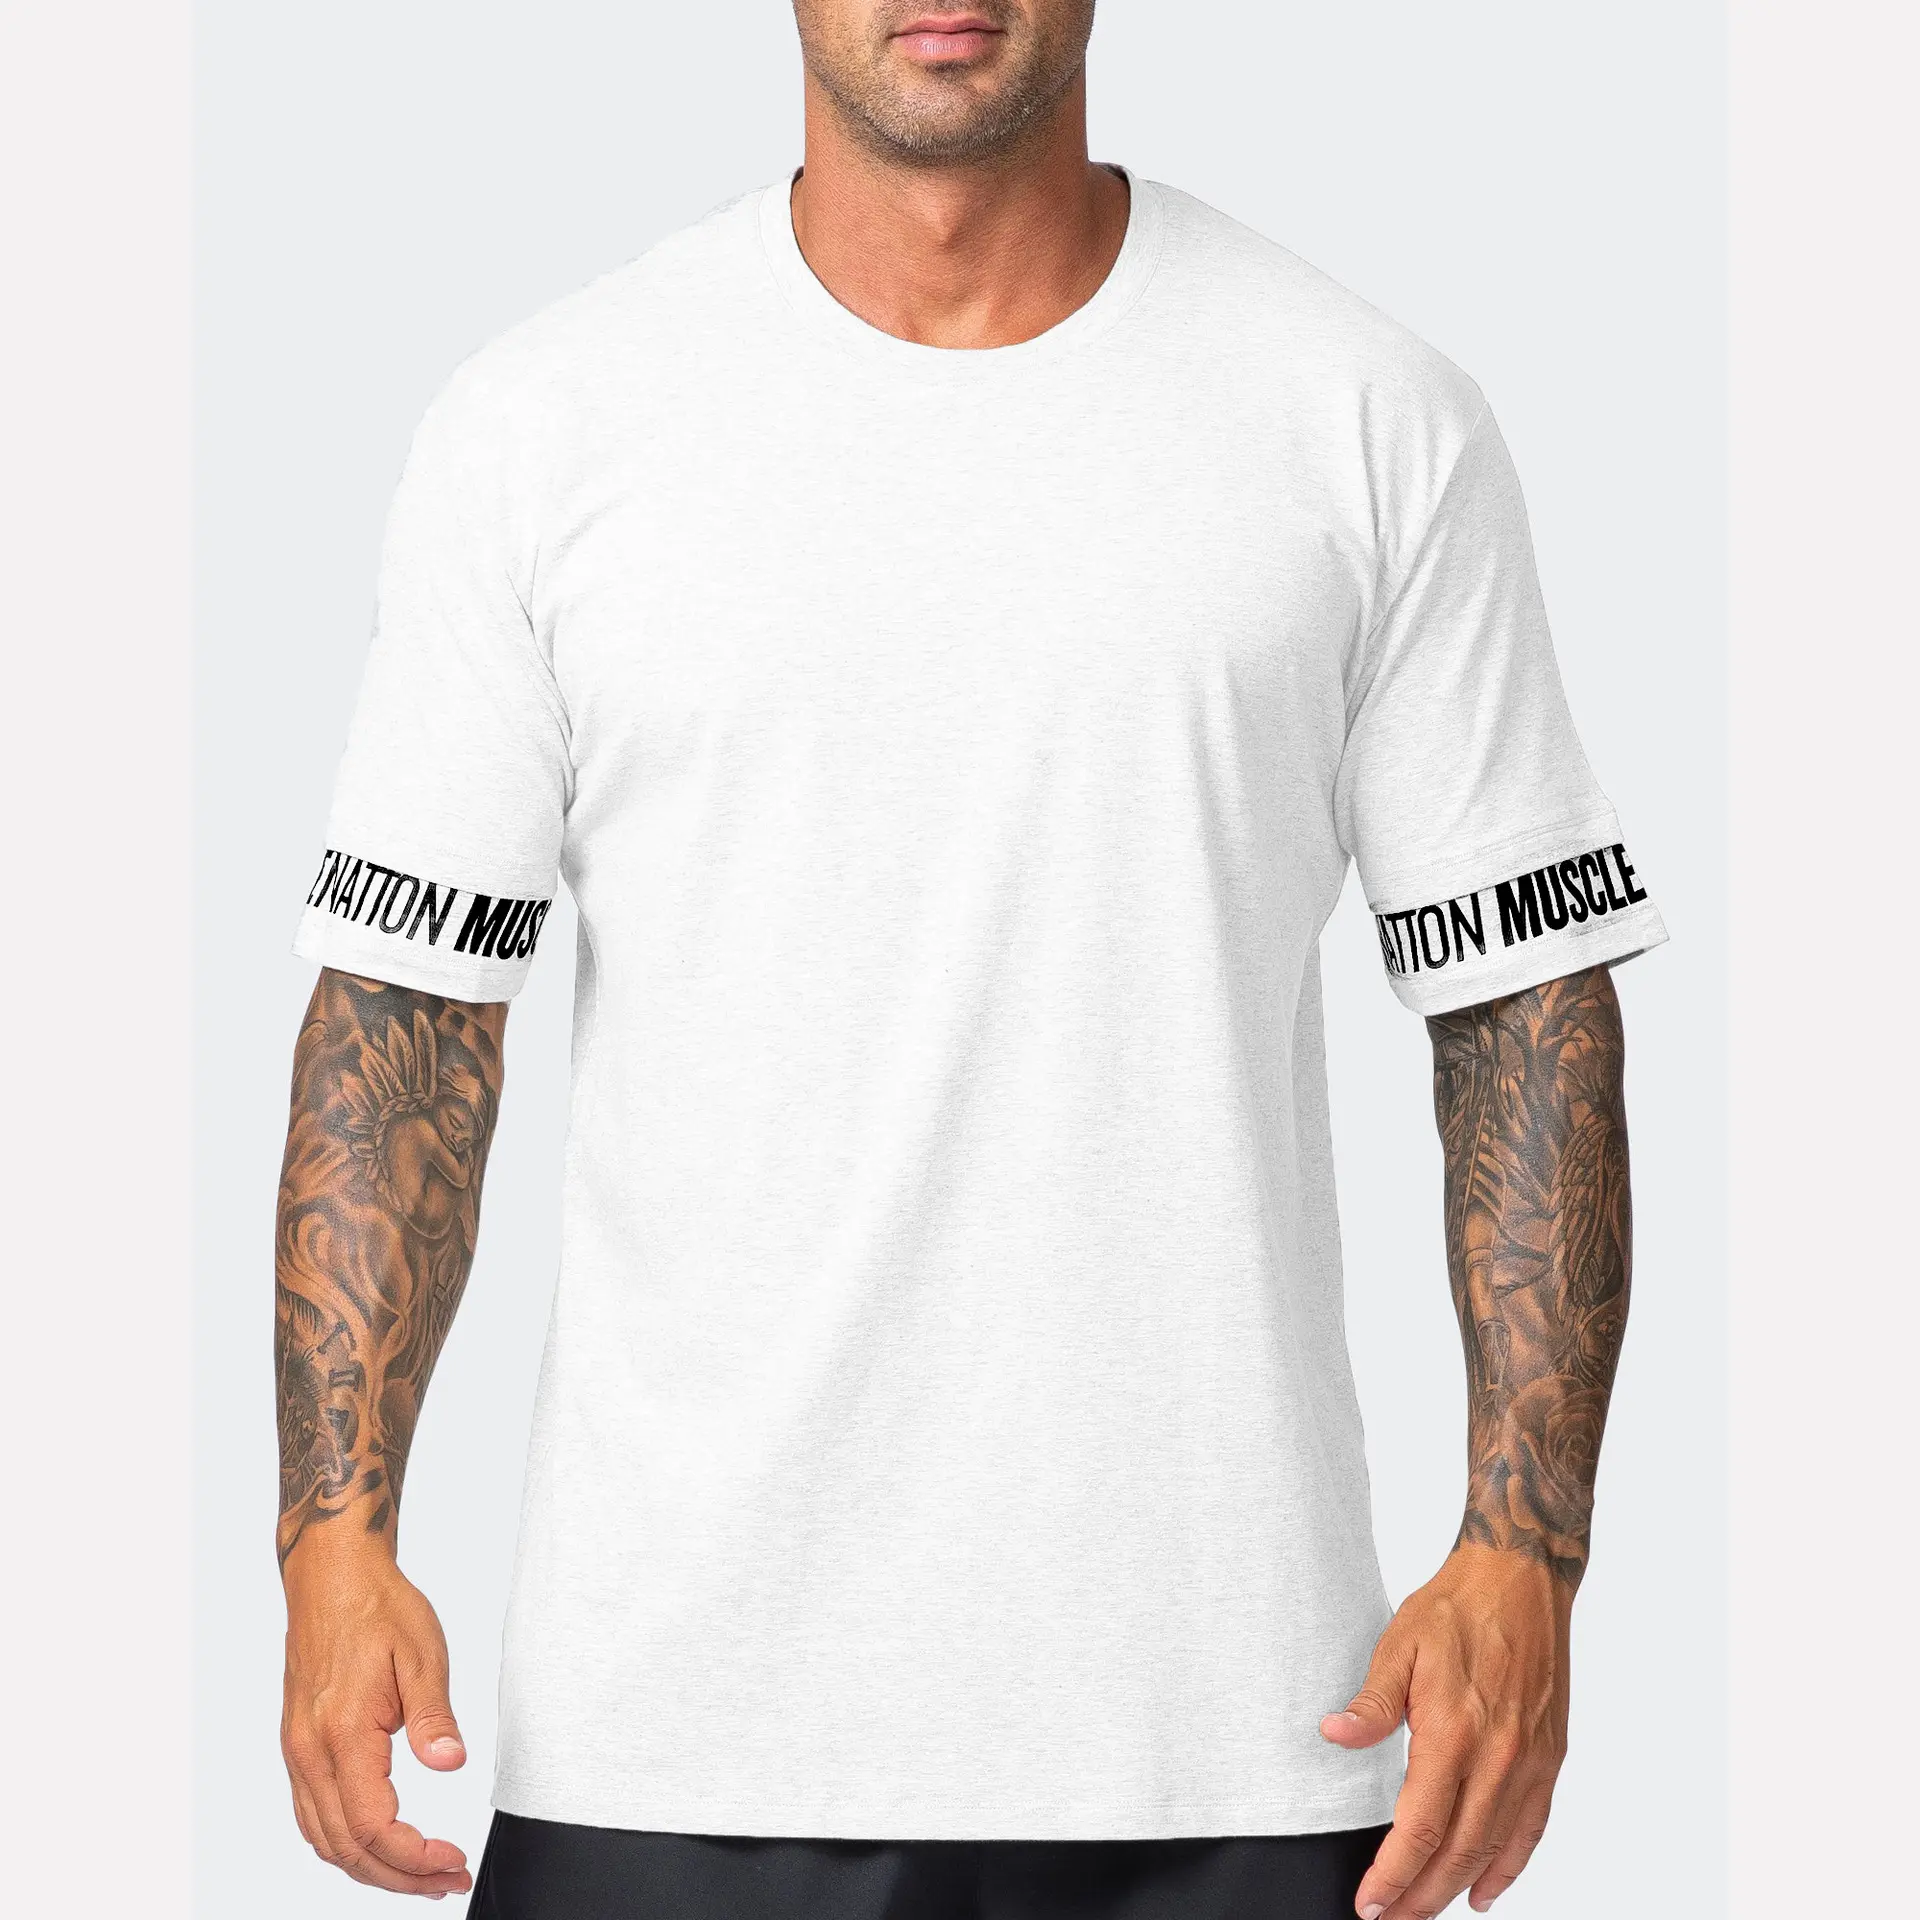 Kaus olahraga pria, kaus katun elastis ukuran besar untuk latihan lari